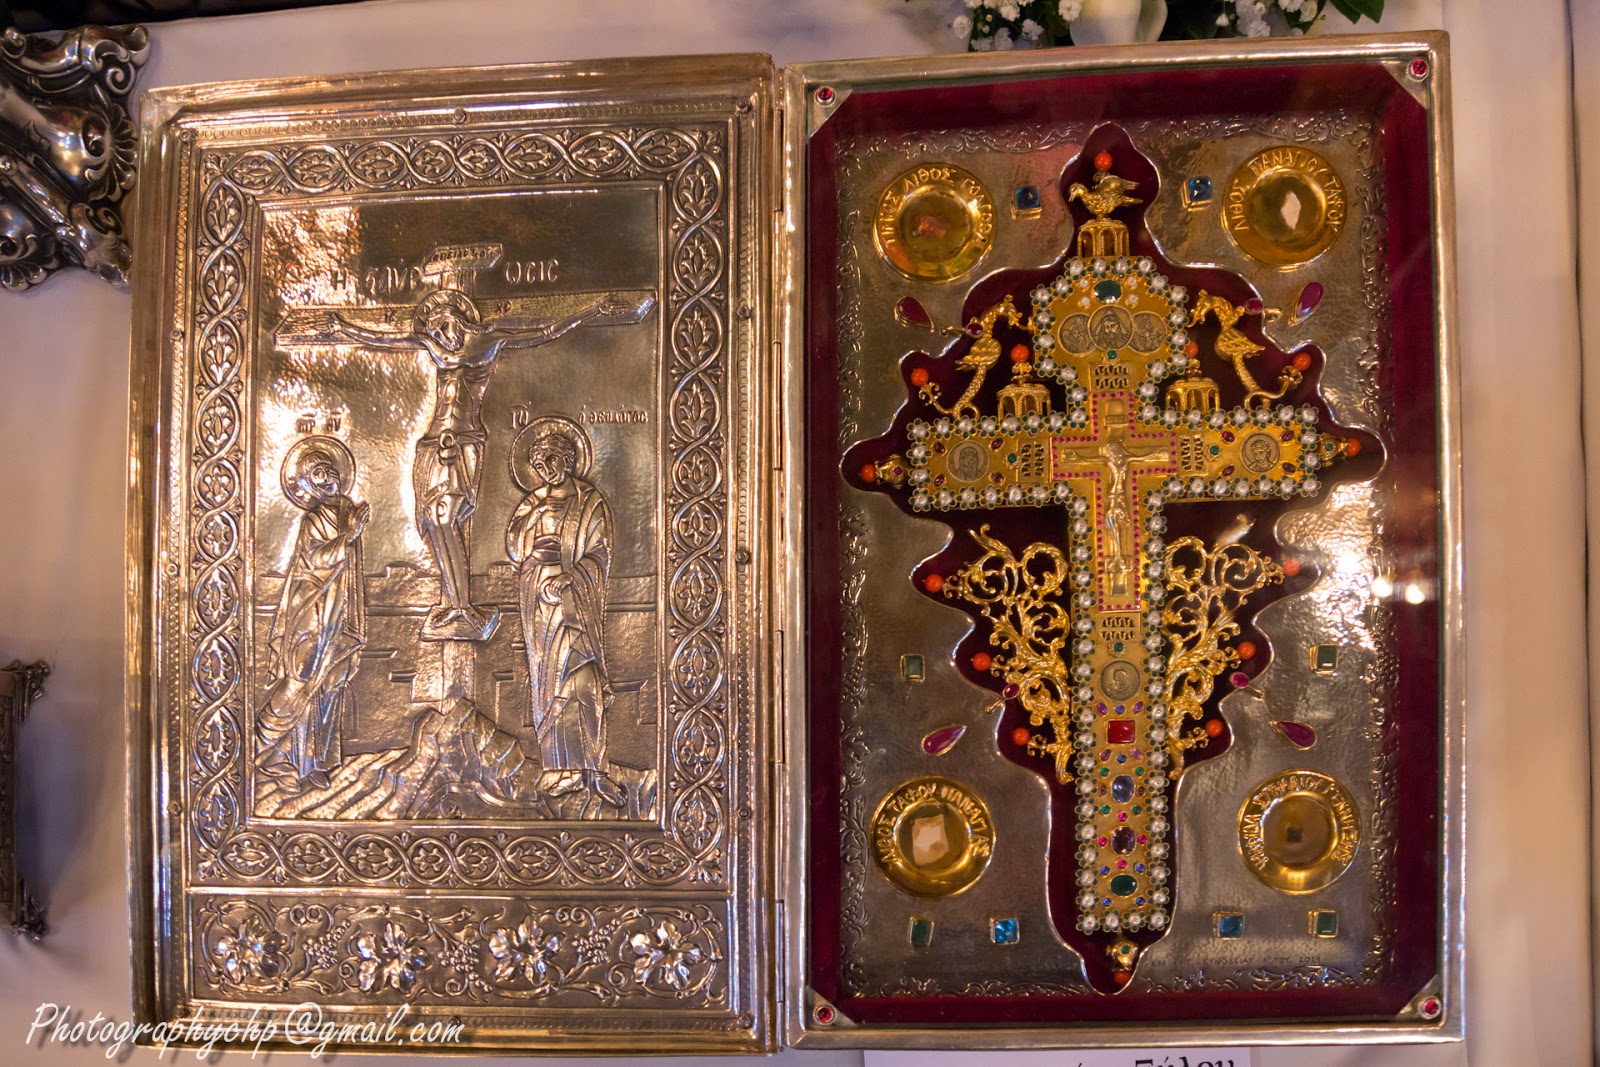 Λείψανα της Ιεράς Μονής Αγίων Αυγουστίνου Ιππώνος και Σεραφείμ του Σάρωφ σε ιερά περιοδεία http://leipsanothiki.blogspot.be/